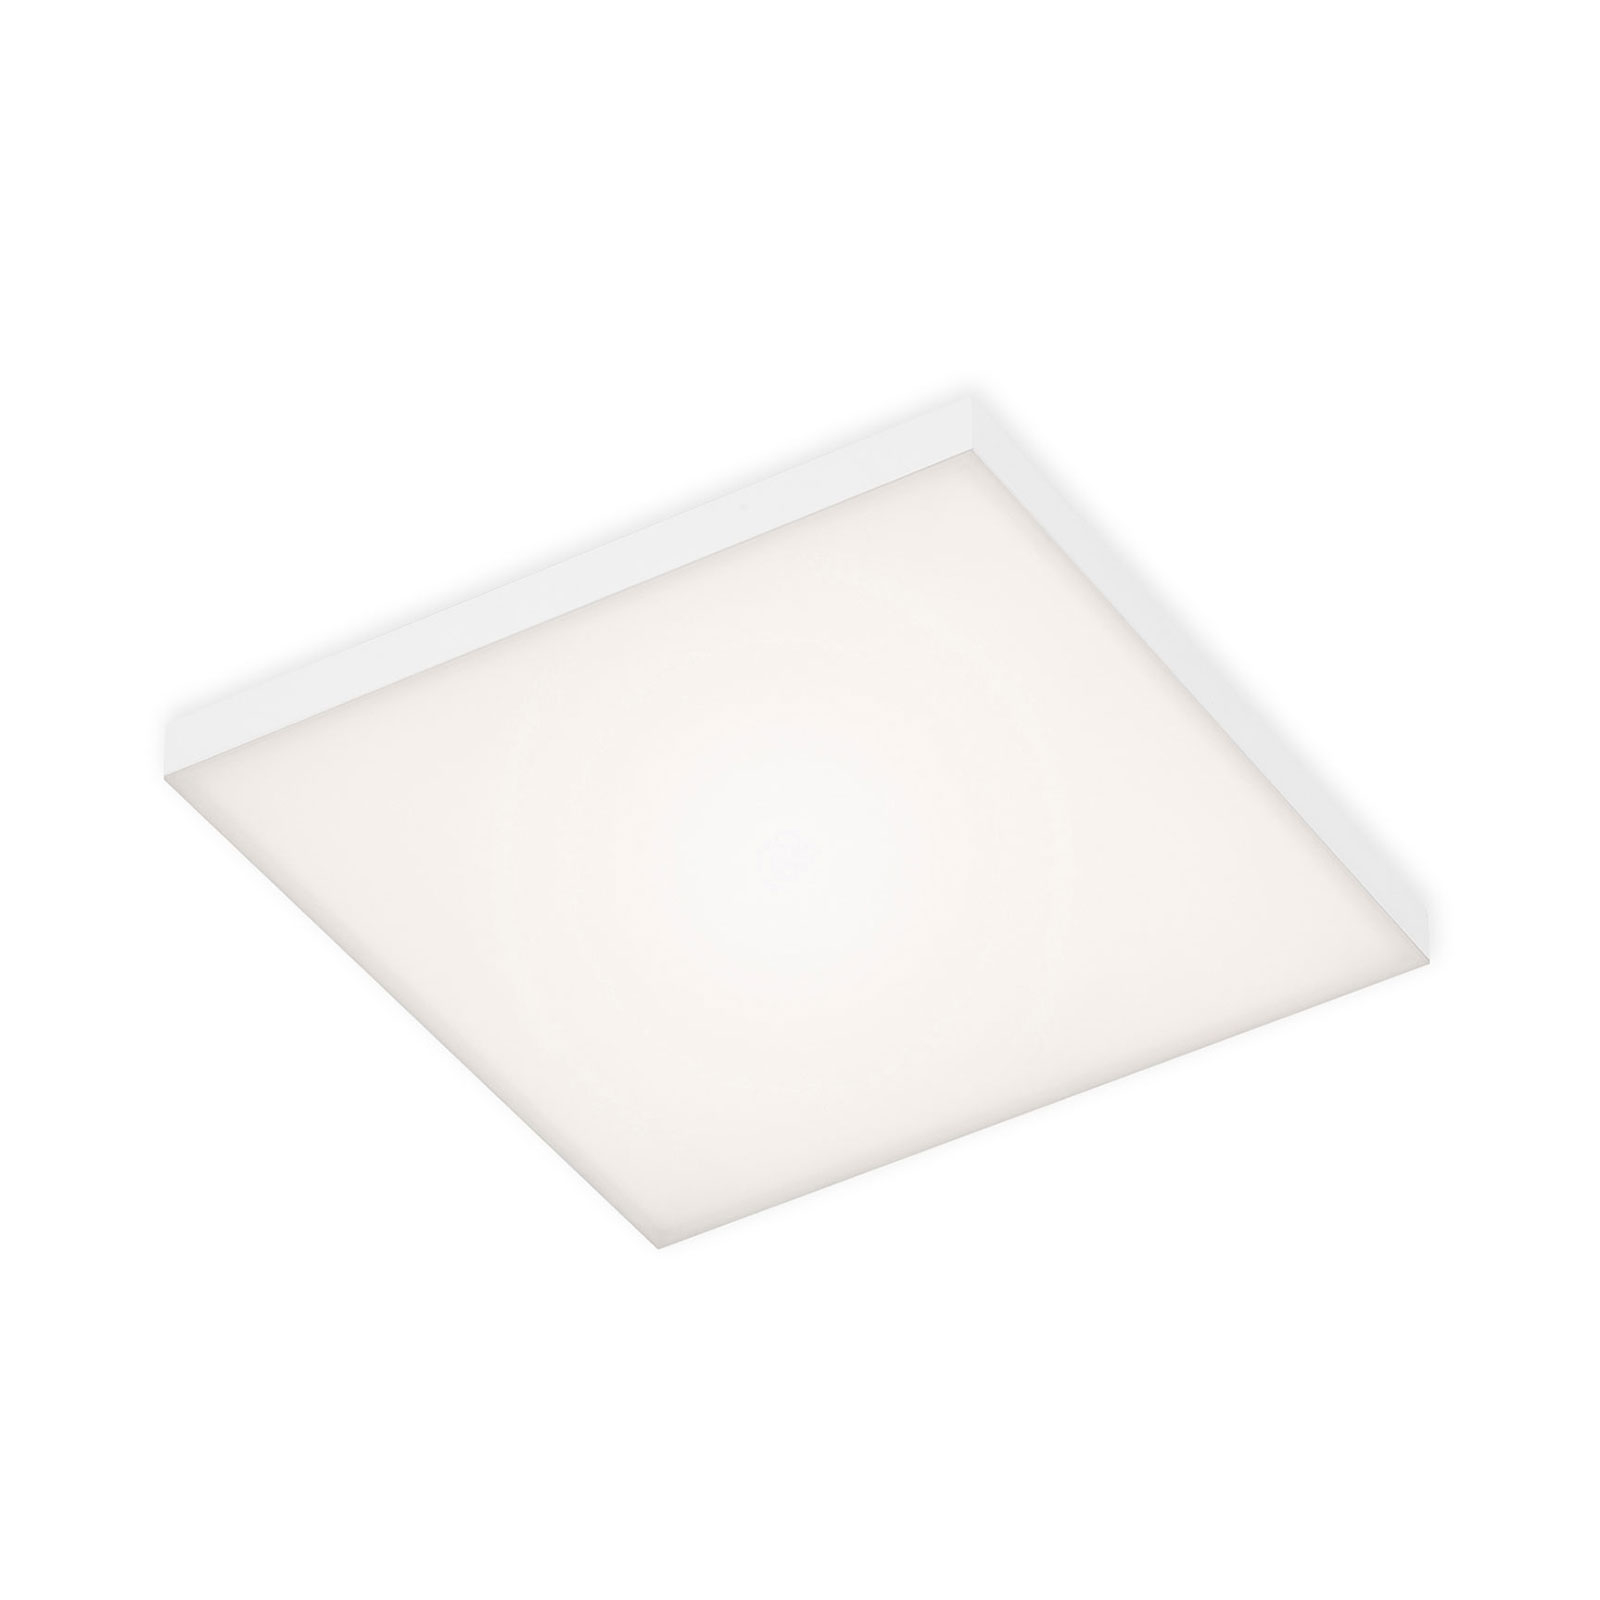 Frameless LED ceiling light RGBW, 30 x 30 cm